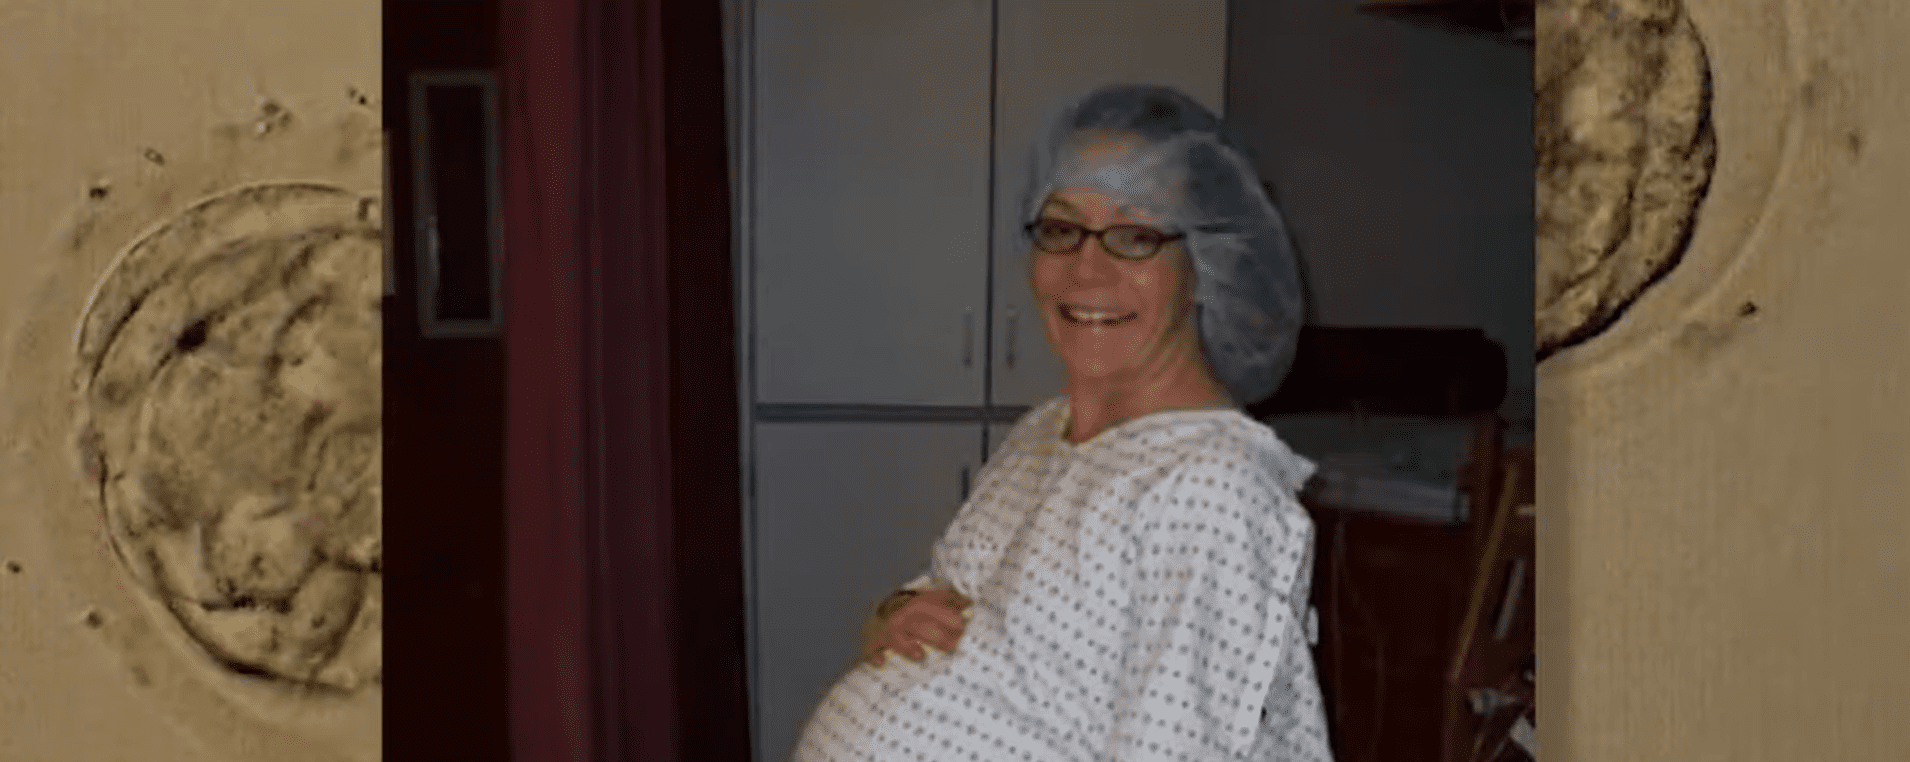 Donna Johnson während der Schwangerschaft. | Quelle: youtube.com/abc4utah